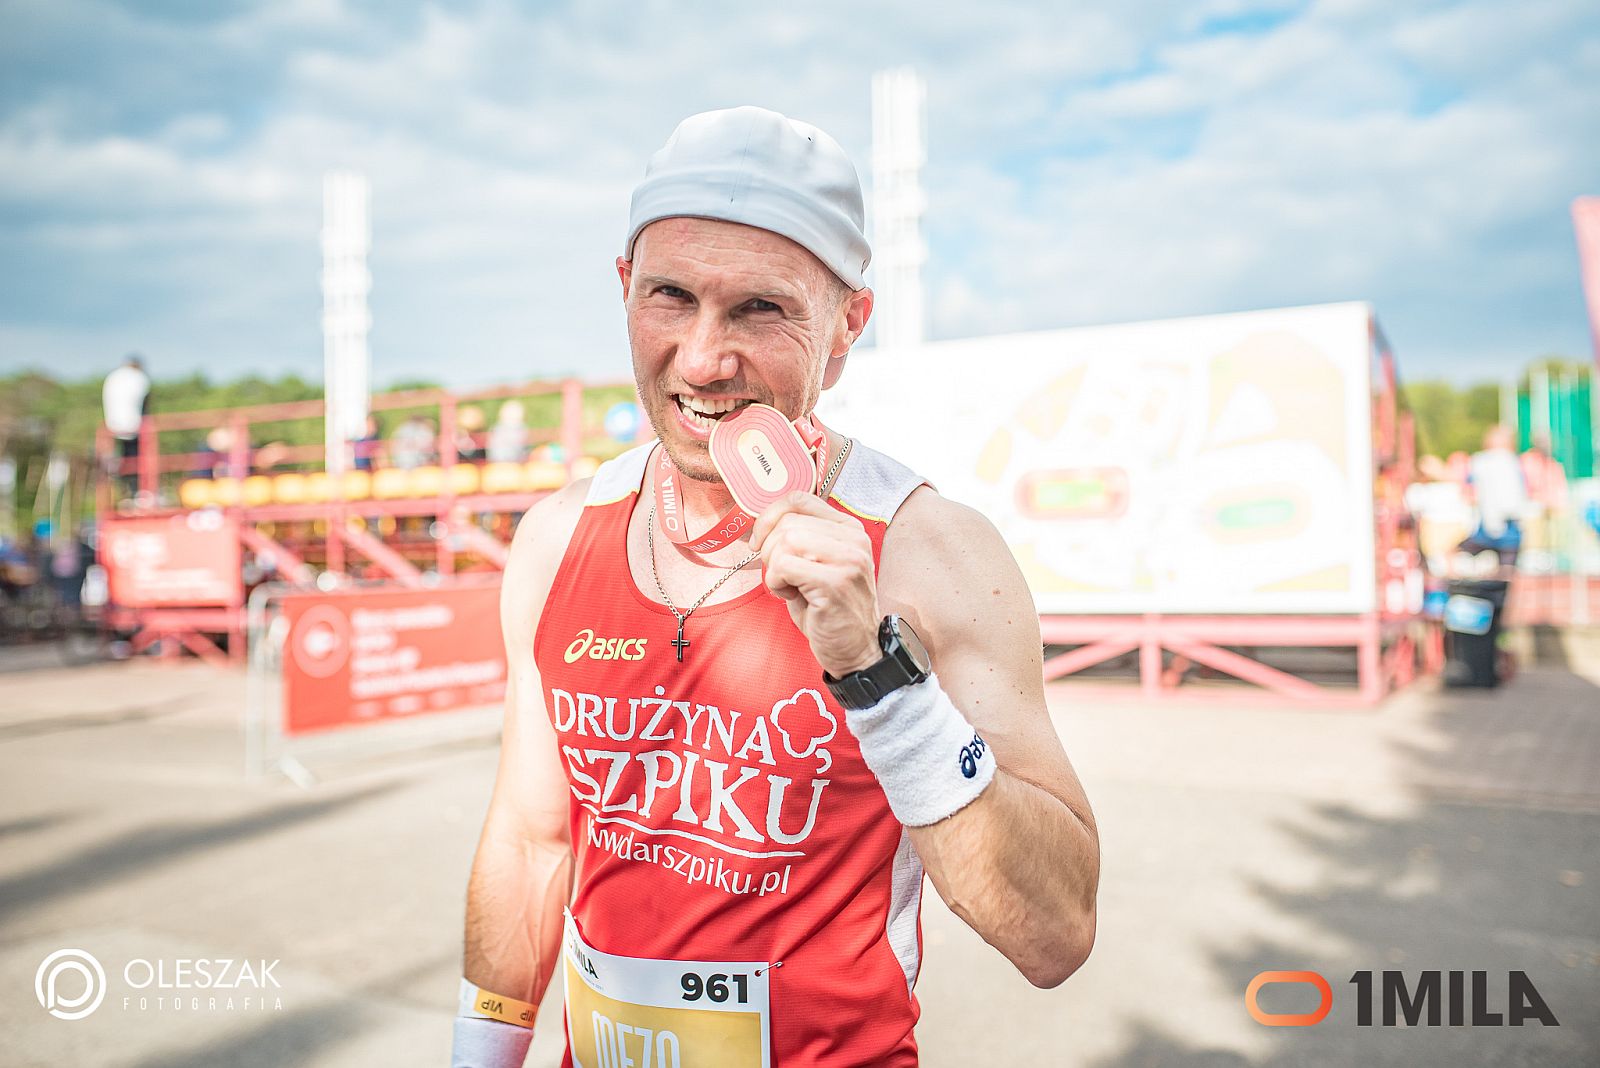 Jacek Mezo Mejer pozuje do zdjęcia trzymając medal w zębach